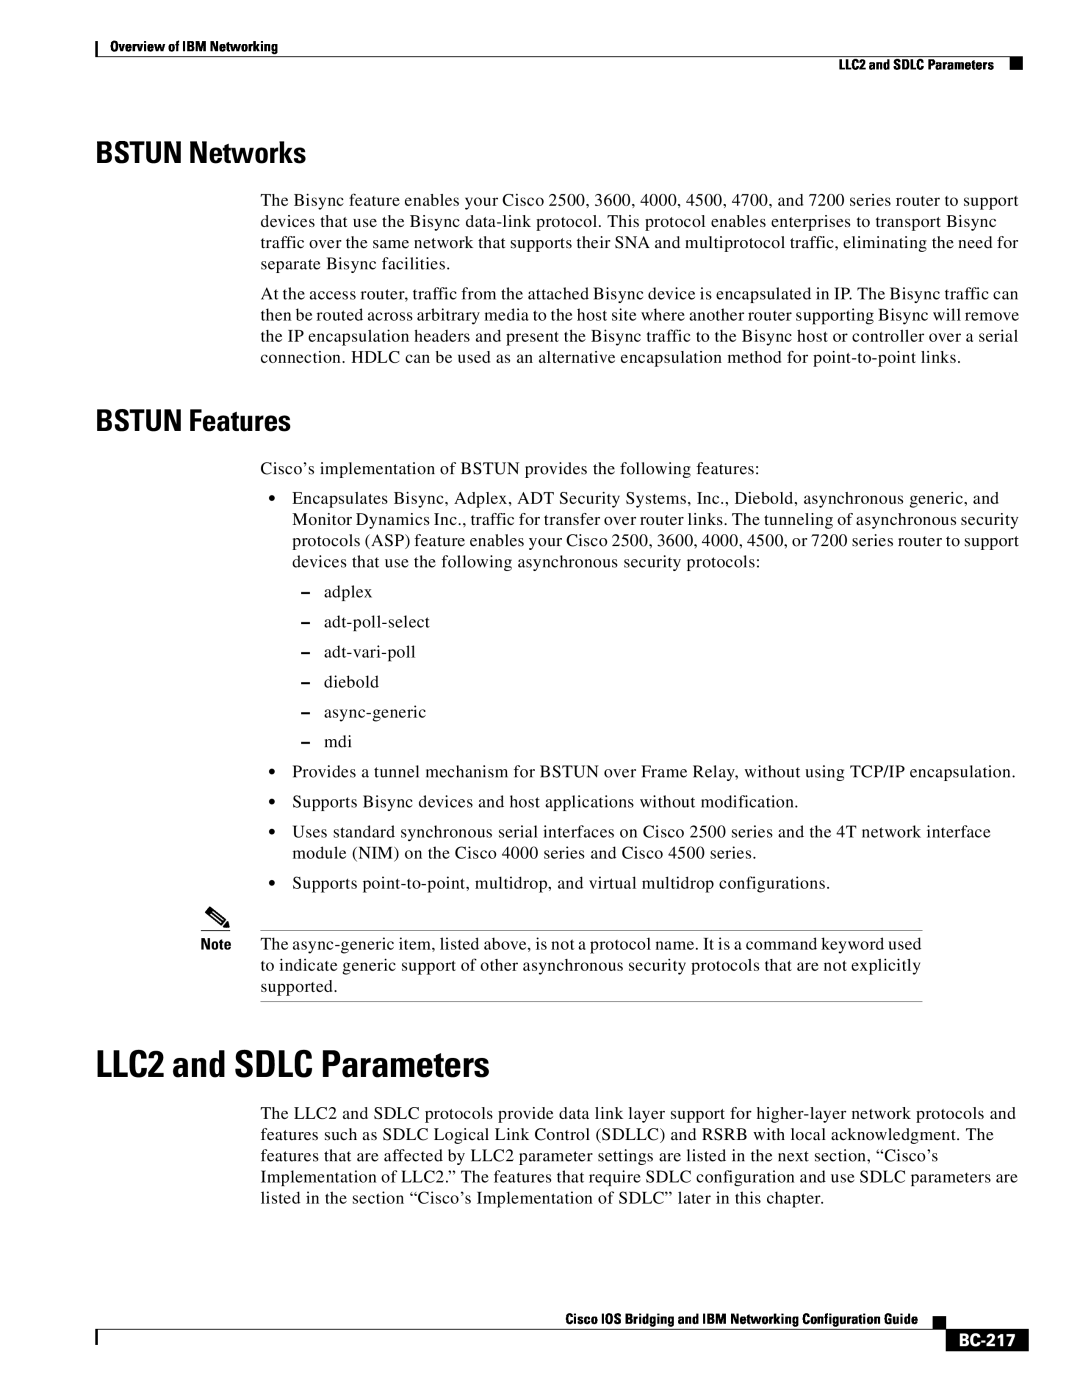 IBM BC-203 manual LLC2 and SDLC Parameters, BSTUN Networks, BSTUN Features, BC-217 